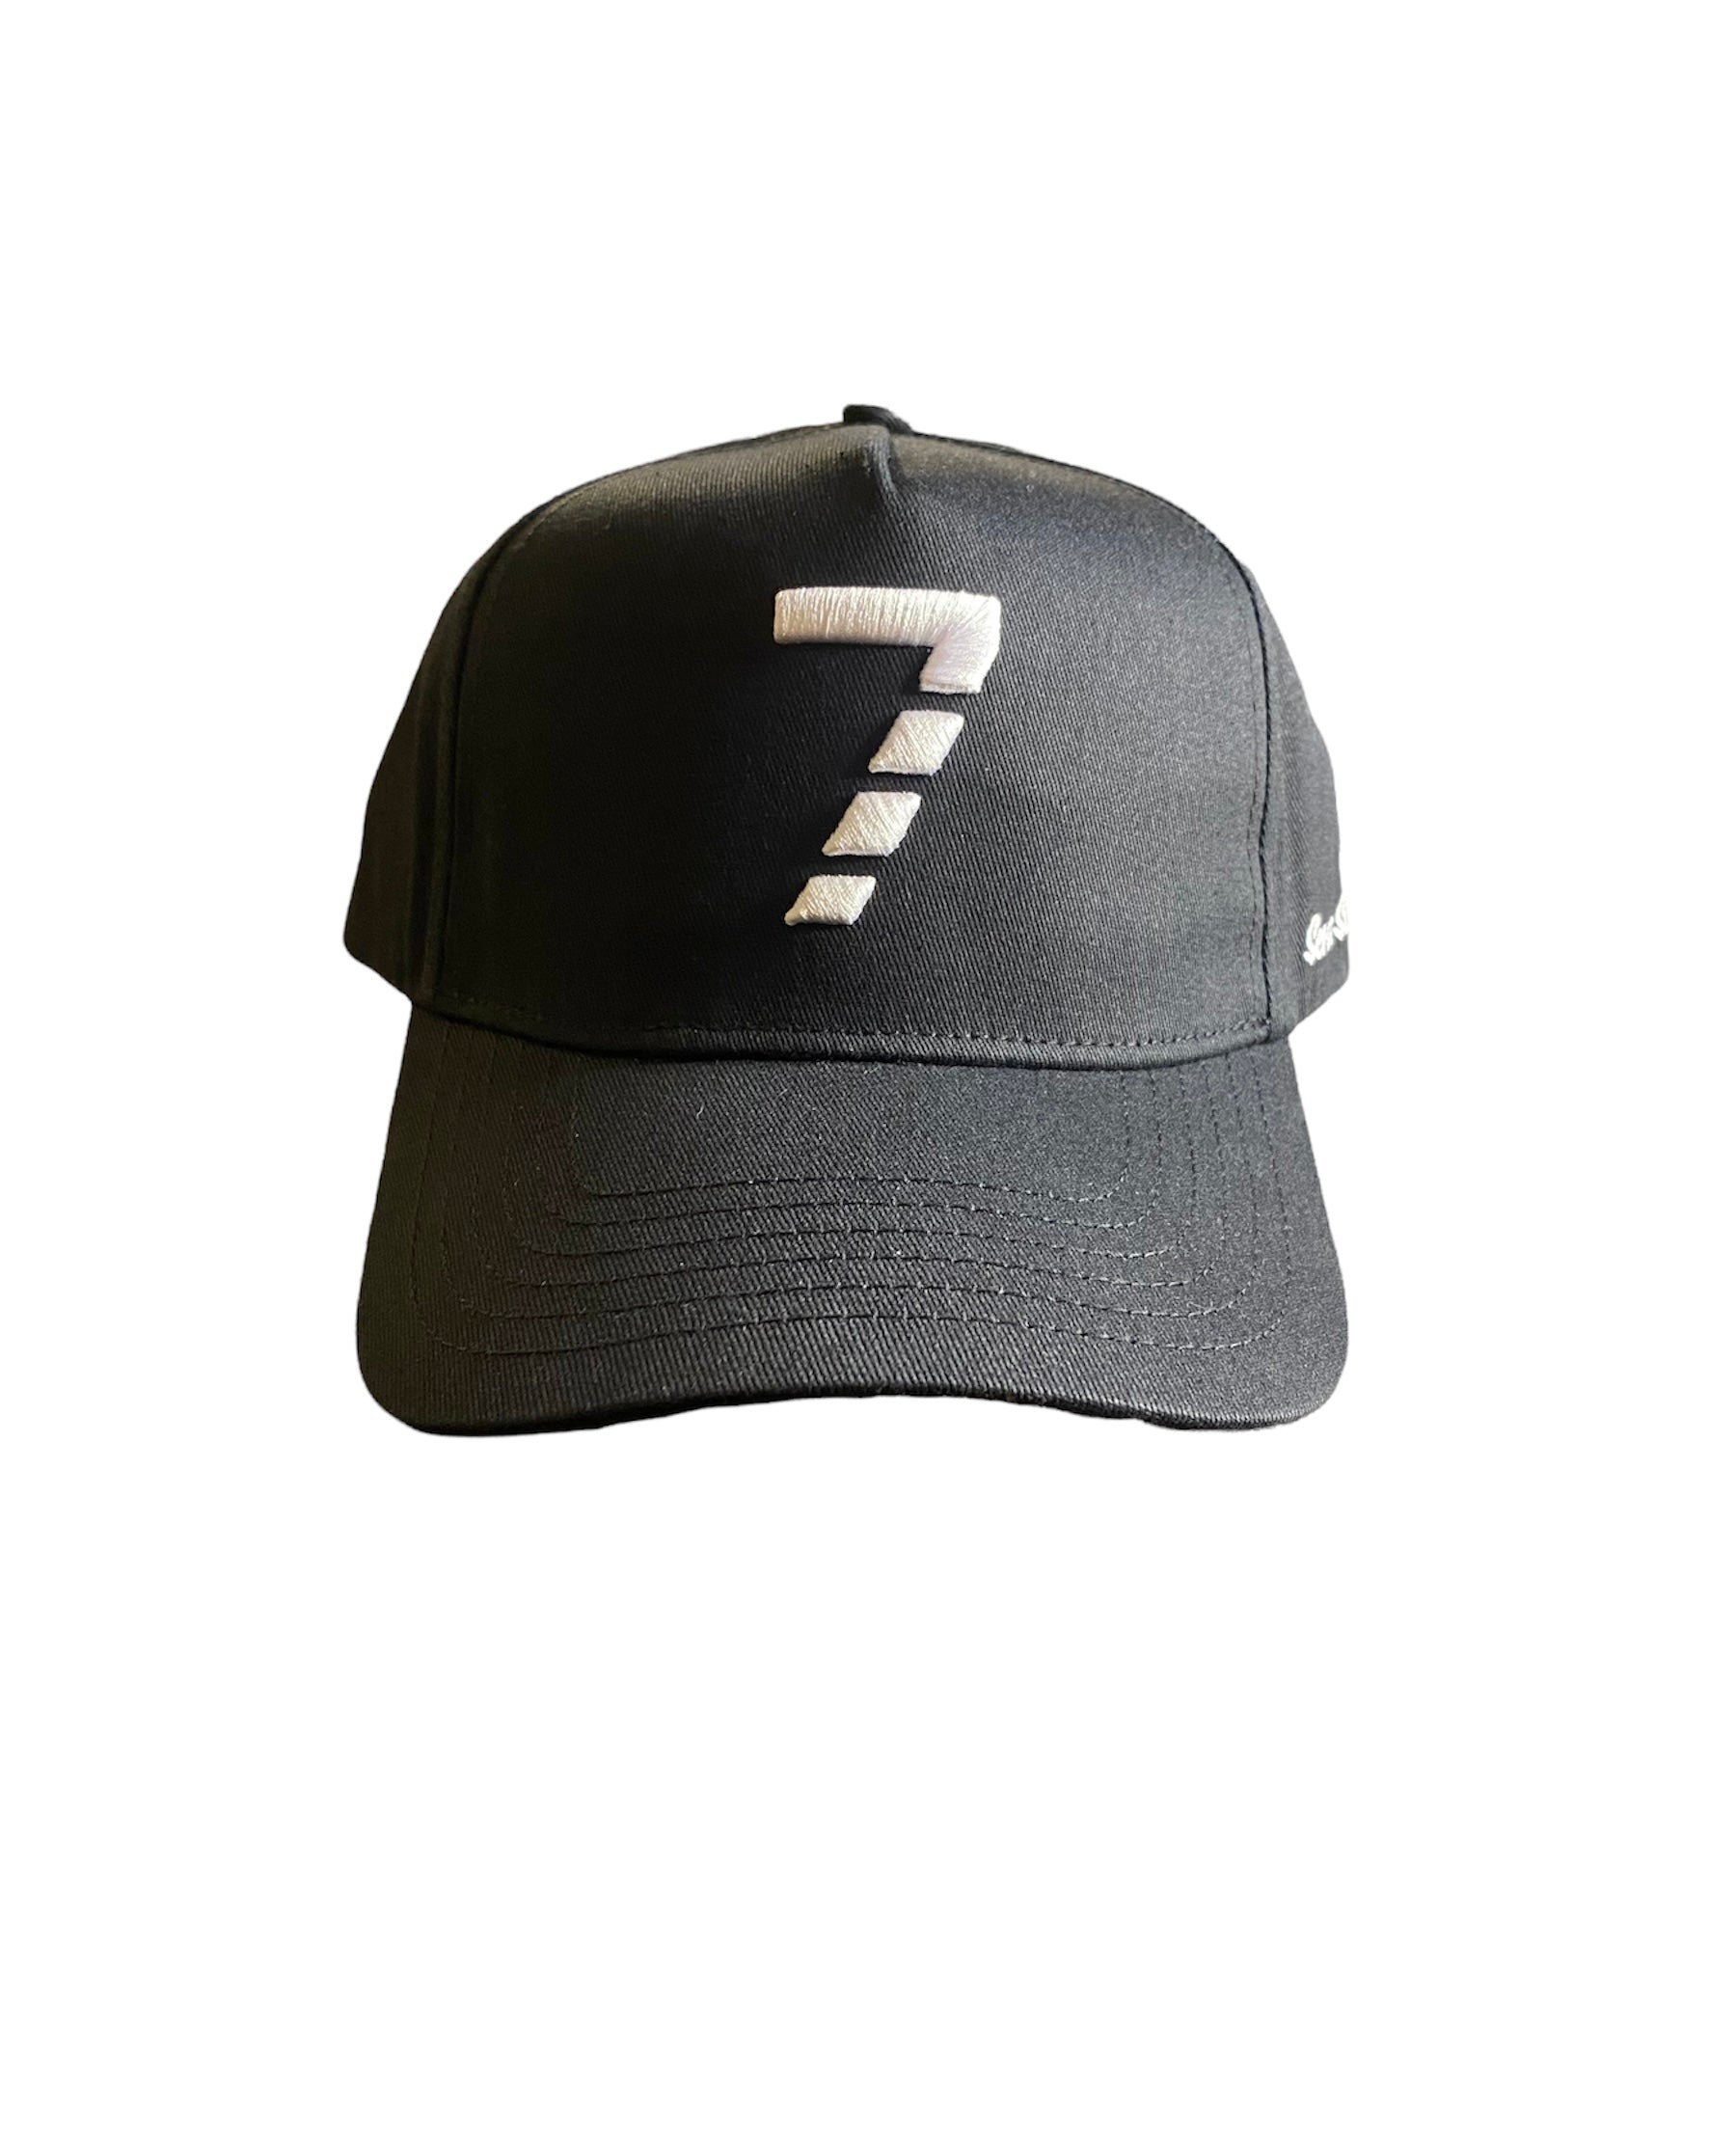 7 Stitches Baseball cap - (Black)